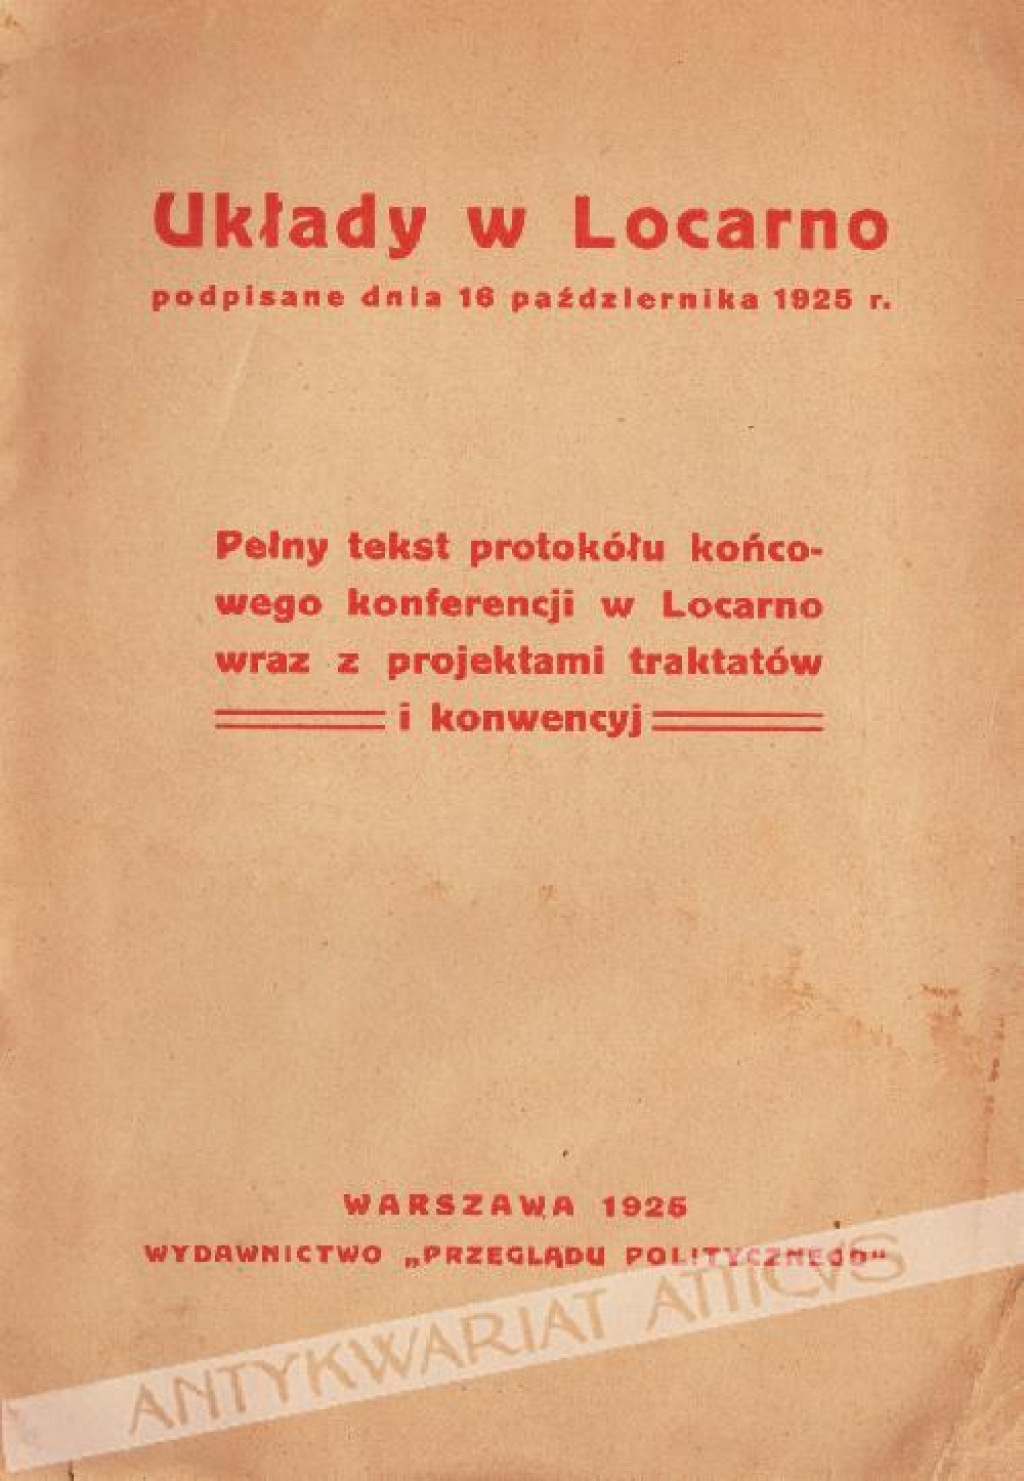 Układy w Locarno podpisane dnia 16 października 1925 r. Pełny tekst protokółu końcowego konferencji w Locarno wraz z projektami traktatów i konwencyj